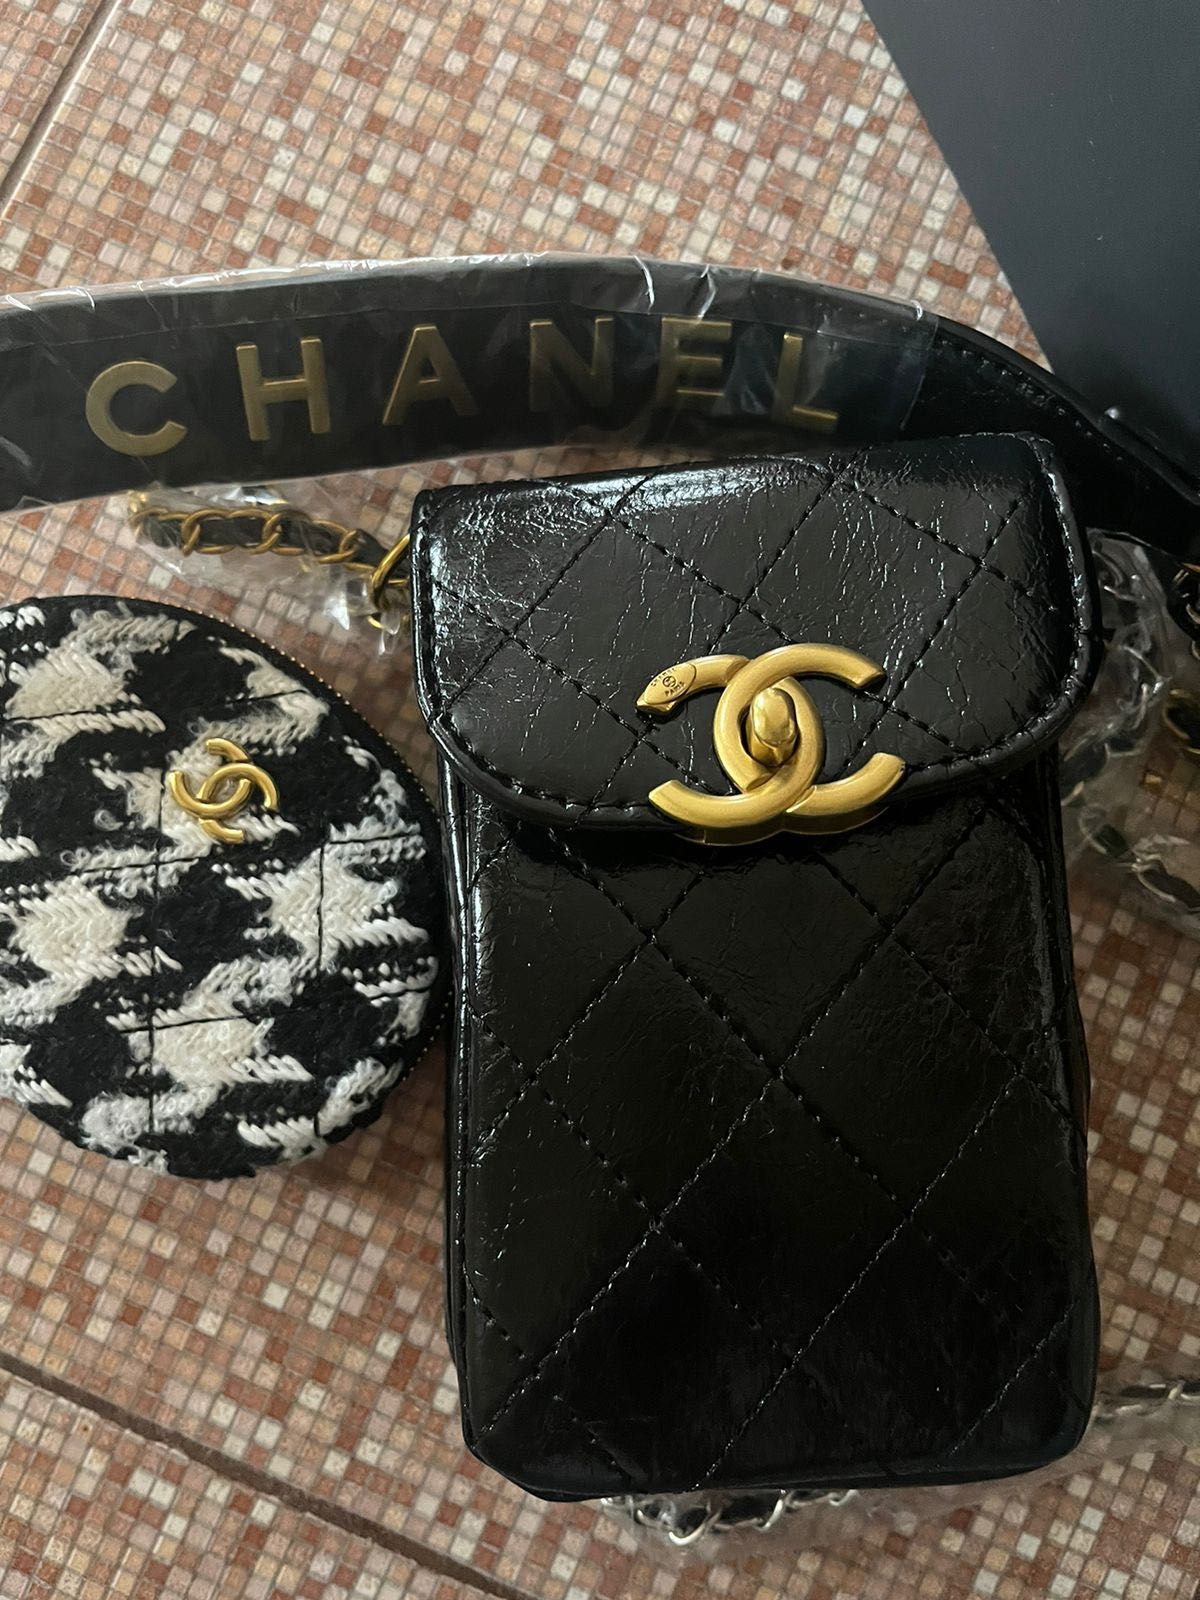 Chanel makeup vip gift сумка